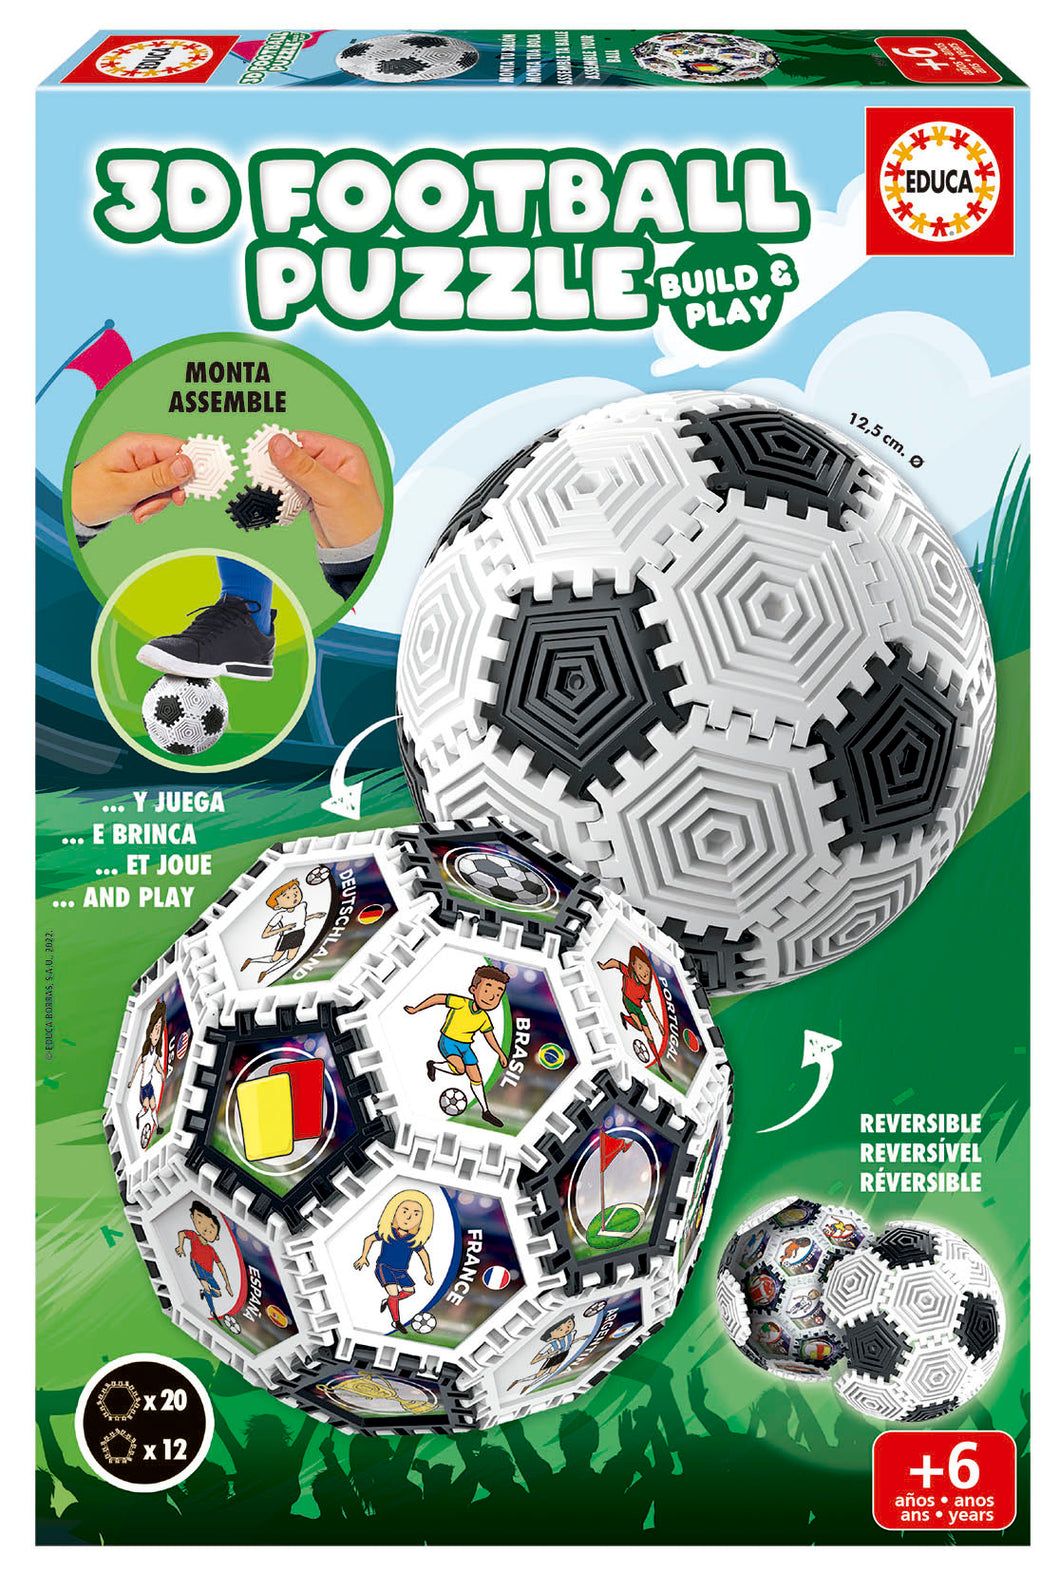  Puzzle 3D Football Podrás montar el balón de múltiples maneras: por el lado cóncavo de las piezas, por el lado convexo, mosaico de imágenes, torre, diábolo, pulsera, Diámetro del balón una vez montado: 12,5 cm.